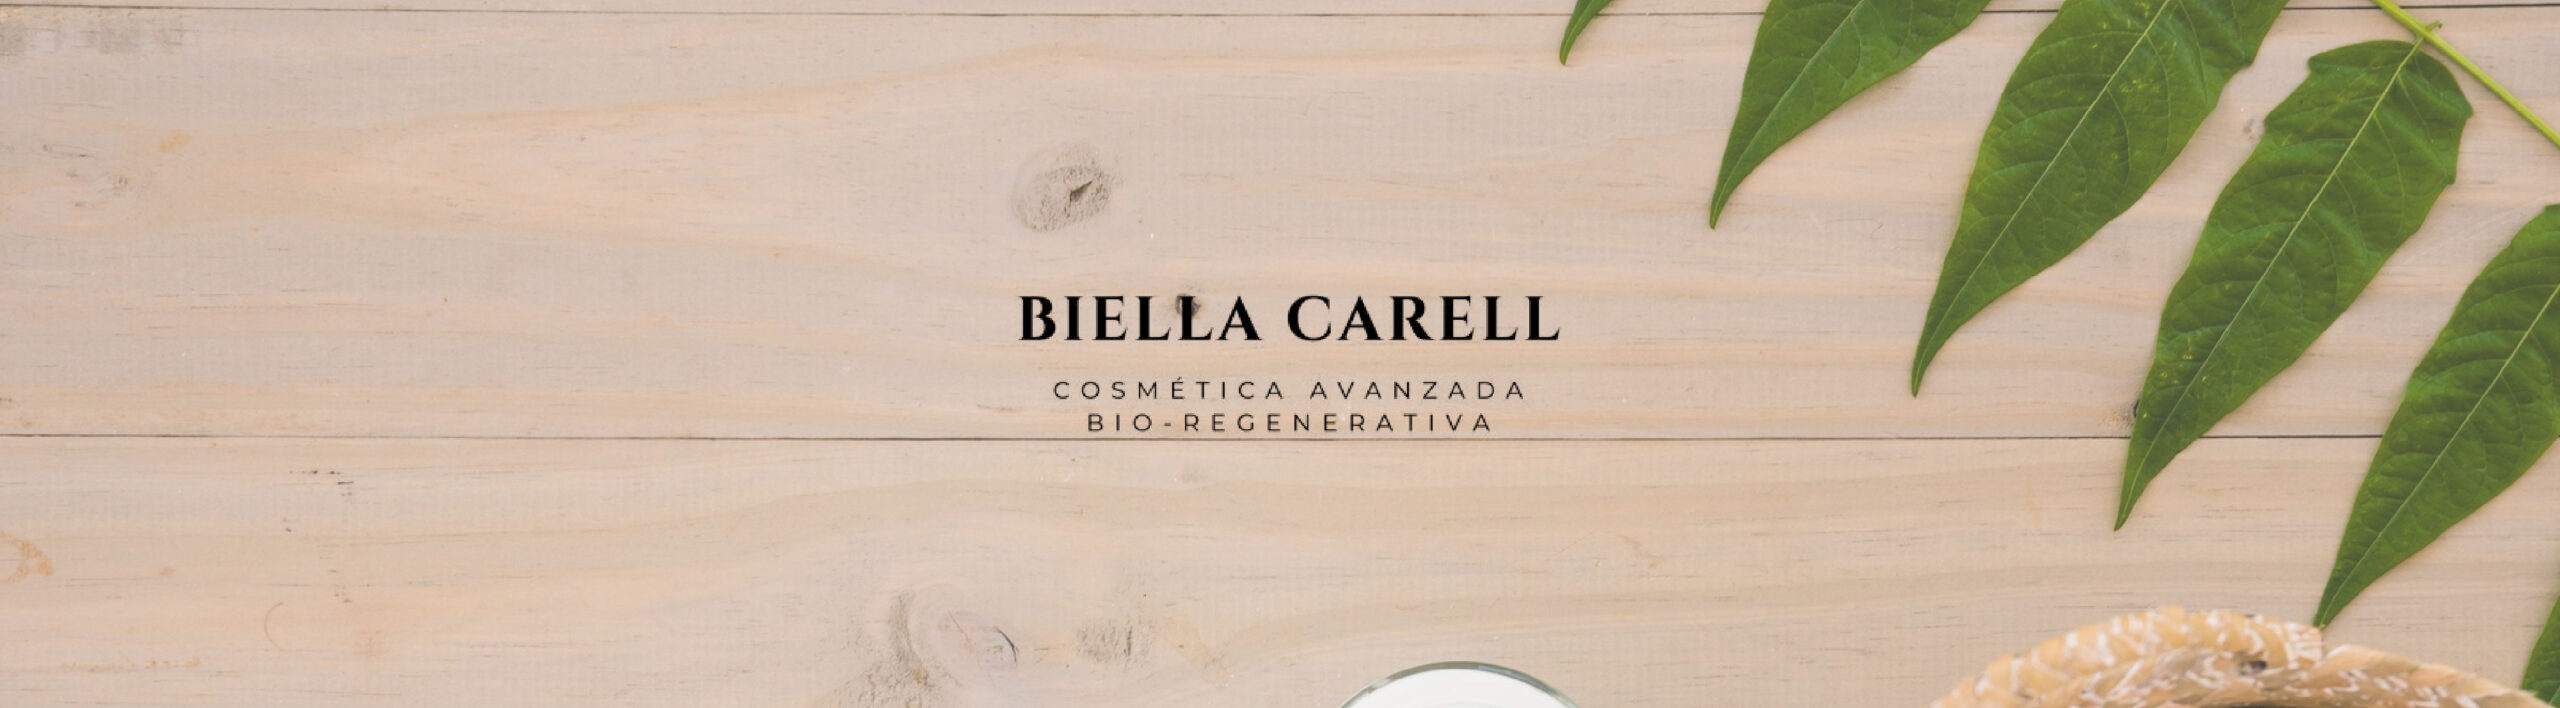 Banner promocional de la marca Biella Carell con un fondo de madera natural y hojas verdes